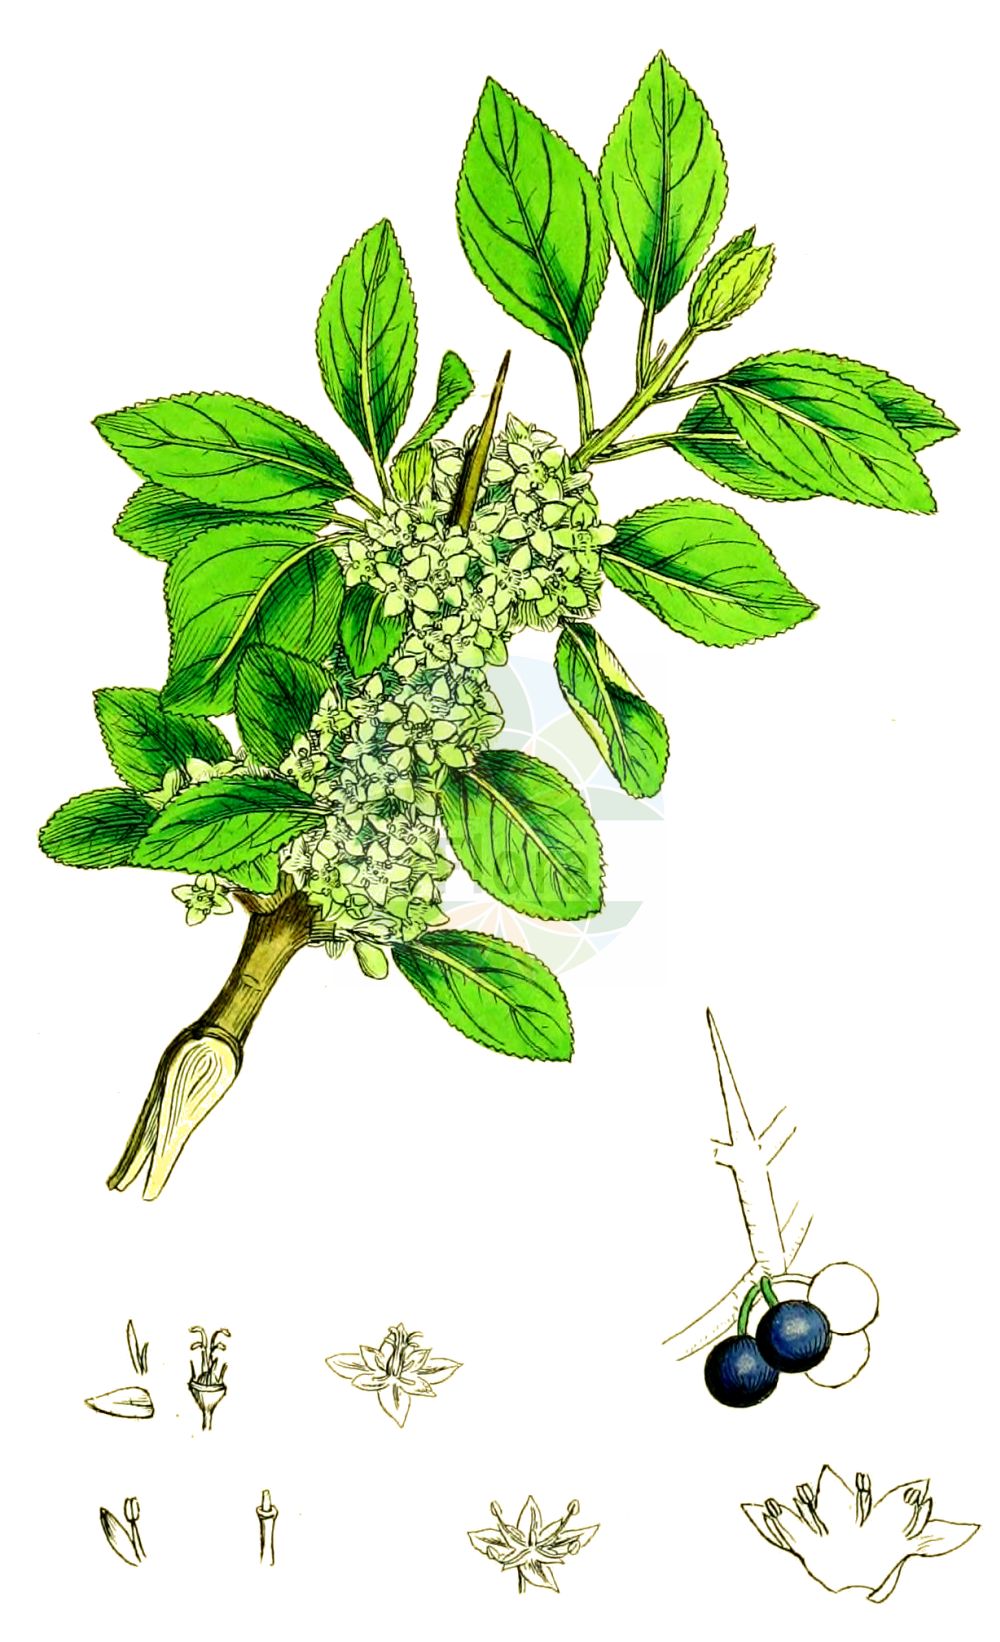 Historische Abbildung von Rhamnus cathartica (Purgier-Kreuzdorn - Buckthorn). Das Bild zeigt Blatt, Bluete, Frucht und Same. ---- Historical Drawing of Rhamnus cathartica (Purgier-Kreuzdorn - Buckthorn). The image is showing leaf, flower, fruit and seed.(Rhamnus cathartica,Purgier-Kreuzdorn,Buckthorn,Rhamnus cathartica,Rhamnus hydriensis,Purgier-Kreuzdorn,Buckthorn,Common Buckthorn,European Buckthorn,Purging Buckthorn,Rhamnus,Kreuzdorn,Buckthorn,Rhamnaceae,Kreuzdorngewächse,Buckthorn family,Blatt,Bluete,Frucht,Same,leaf,flower,fruit,seed,Sowerby (1790-1813))